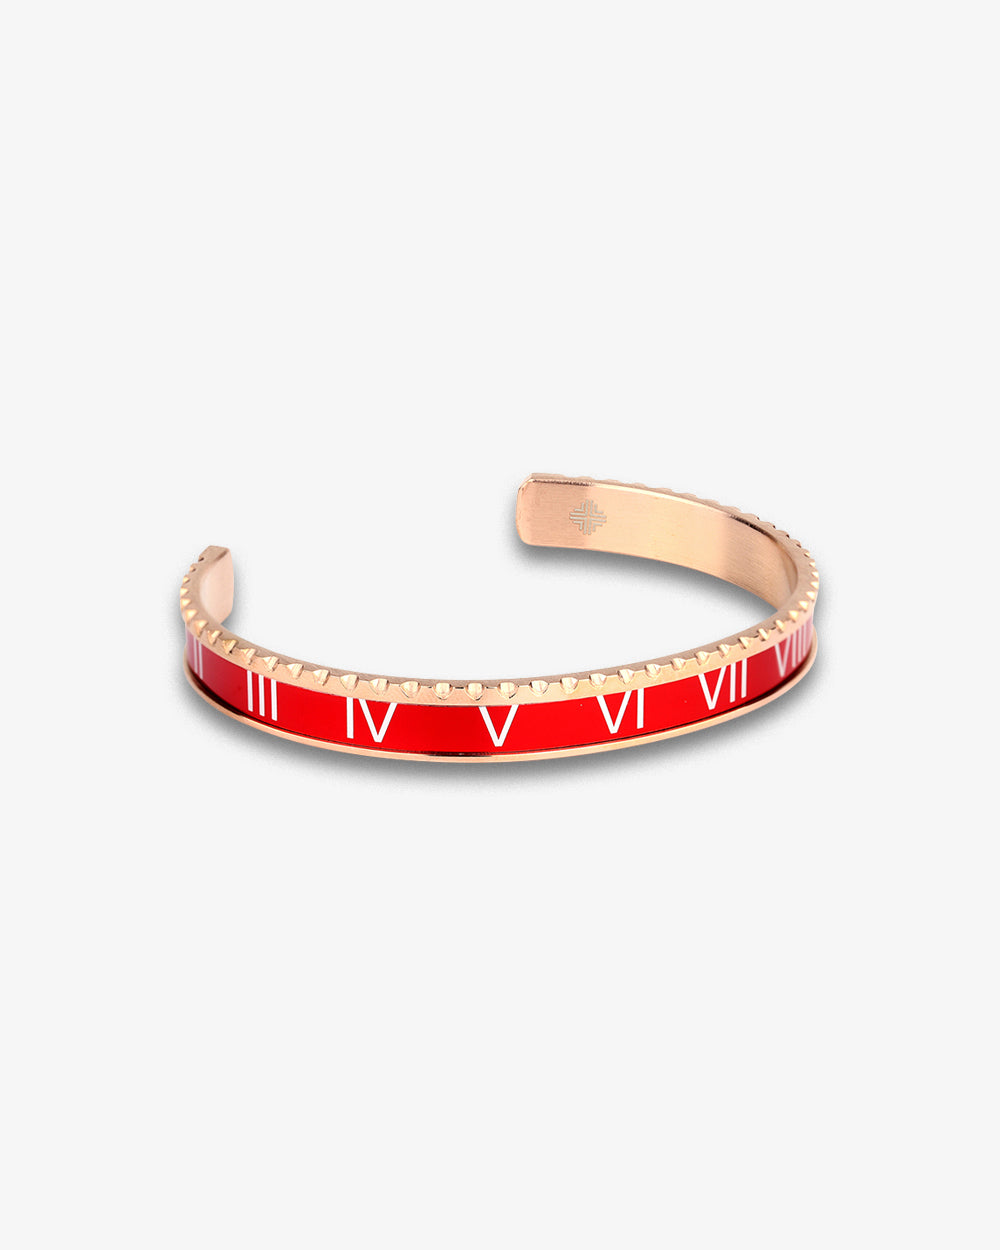 Louis Vuitton Bracelet Review - Wear & tear/Excellent Gifts! 